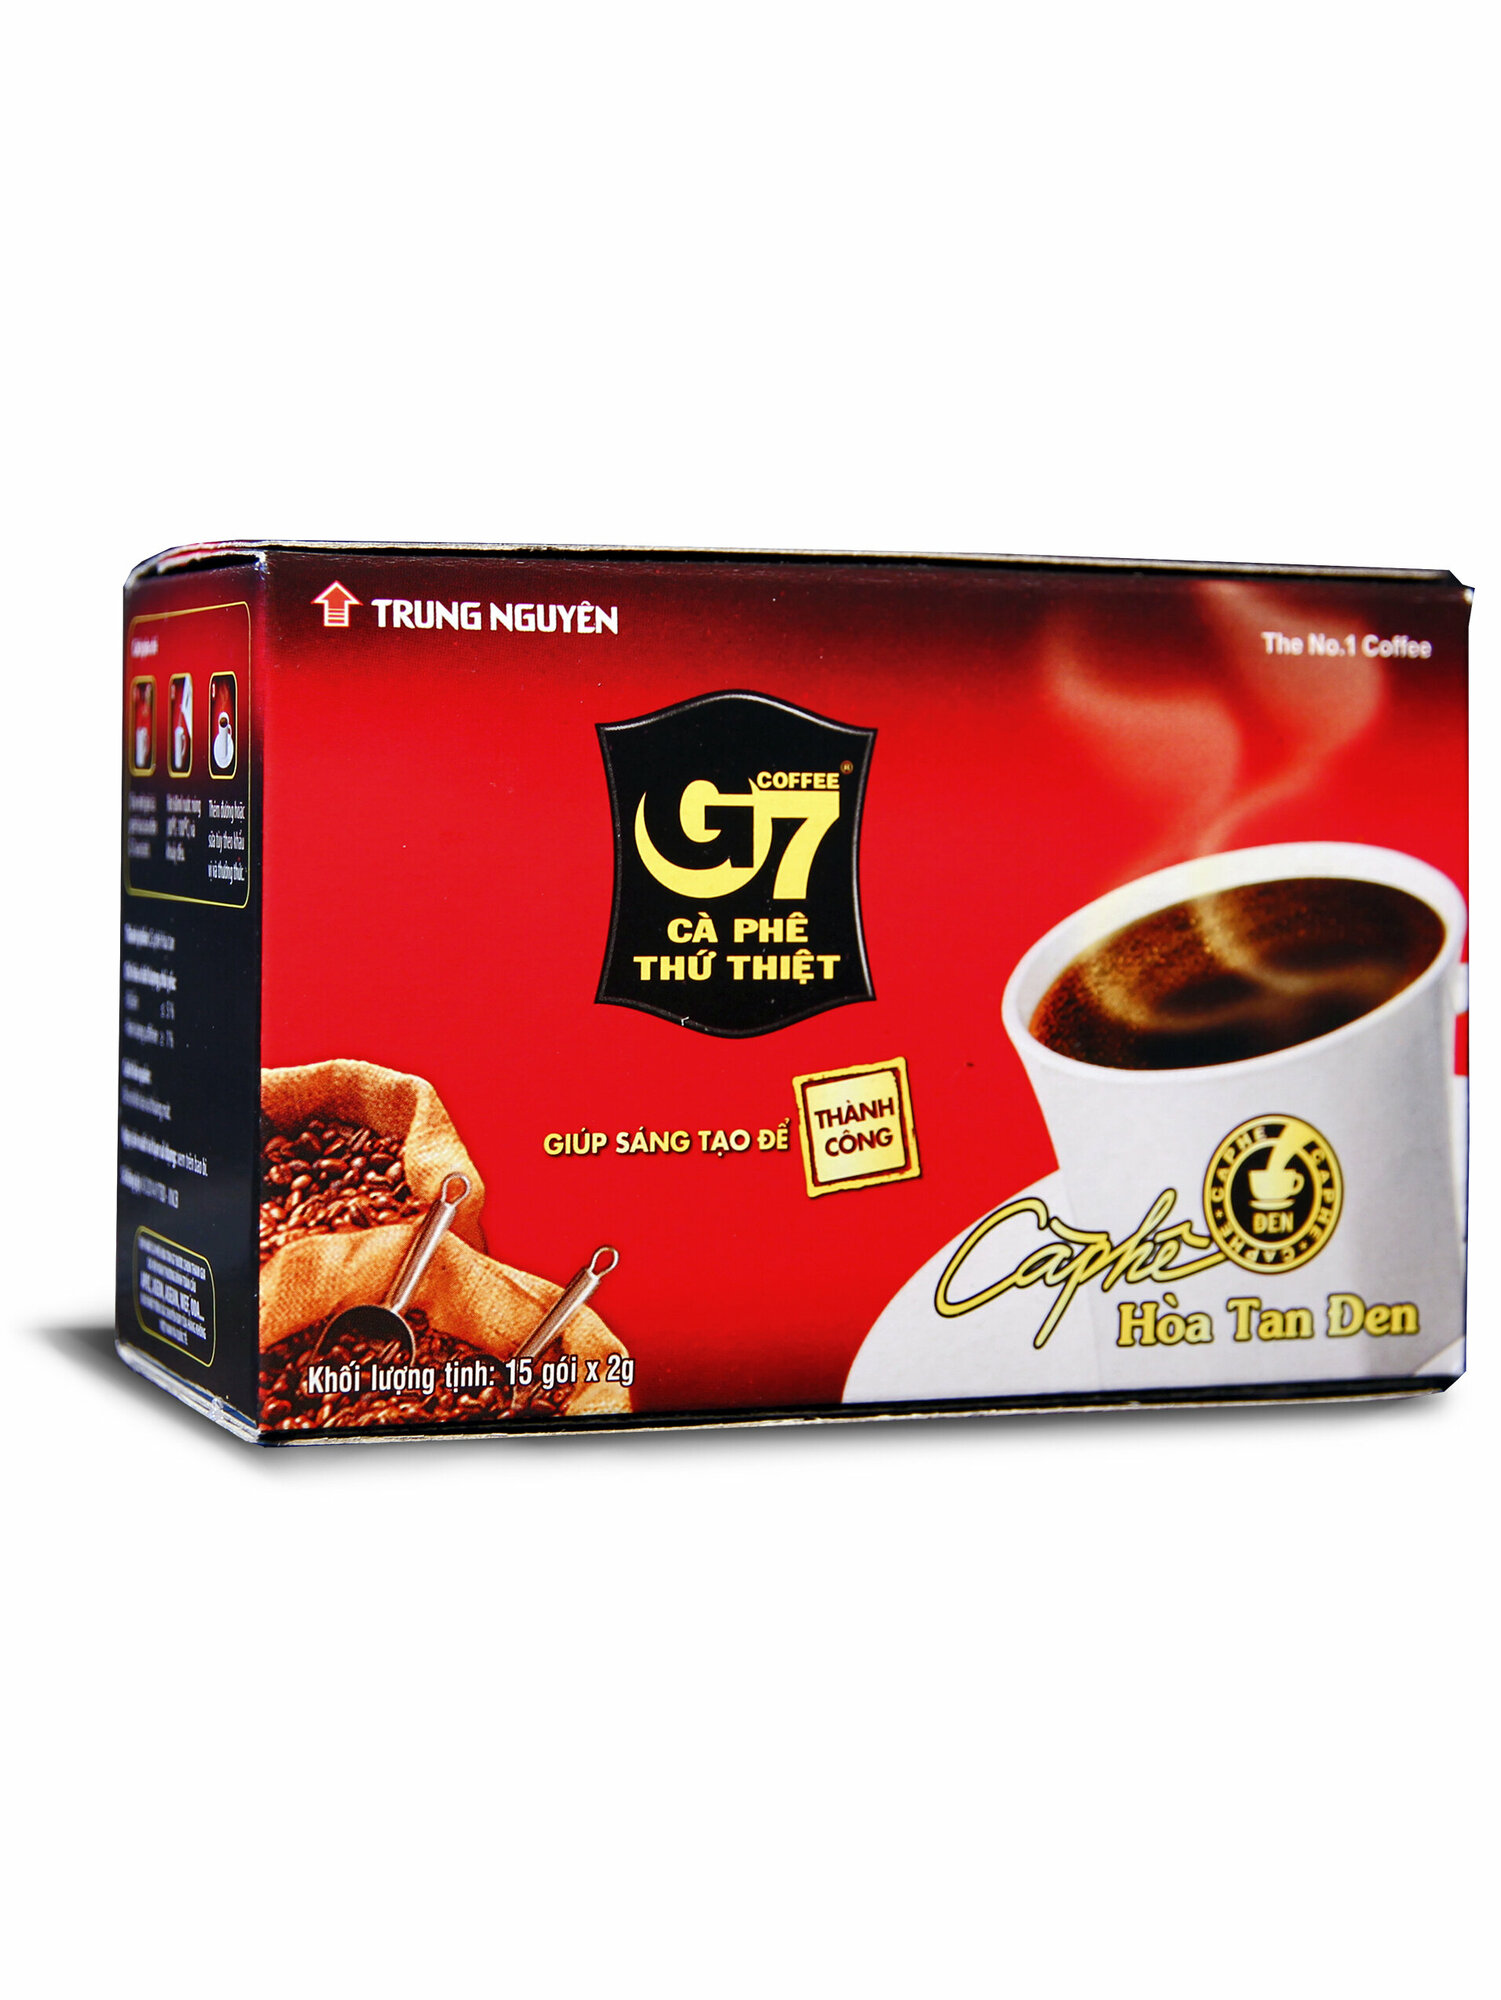 Кофе растворимый Трунг нгуен (Trung Nguyen) G7 черный кофе, 15 пак. по 2 г